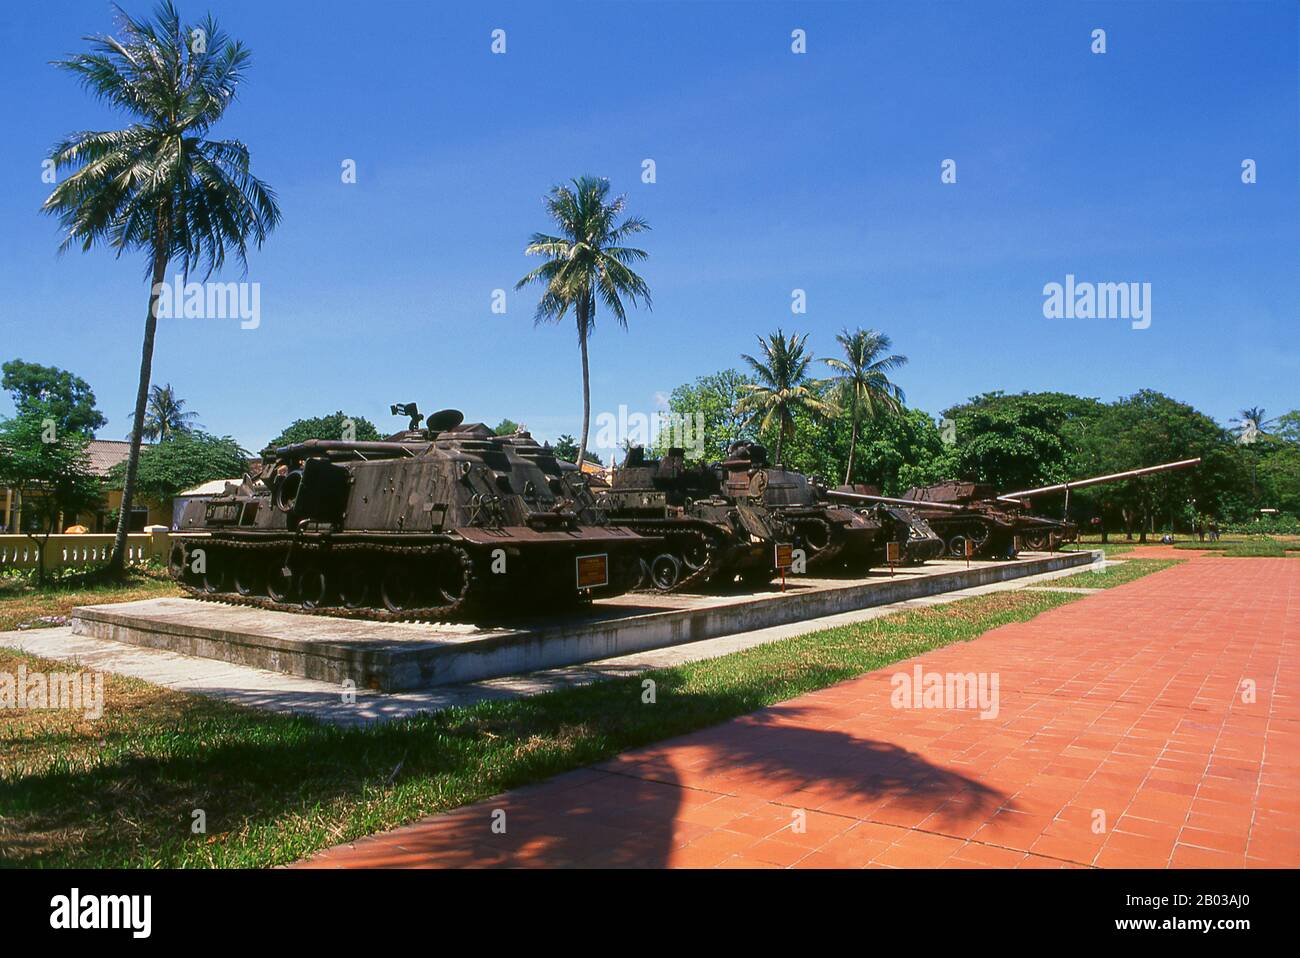 La Segunda Guerra Indochina, conocida en Estados Unidos como la Guerra de Vietnam, fue un conflicto militar de la época de la Guerra Fría que ocurrió en Vietnam, Laos y Camboya desde el 1 de noviembre de 1955 hasta la caída de Saigón el 30 de abril de 1975. Foto de stock